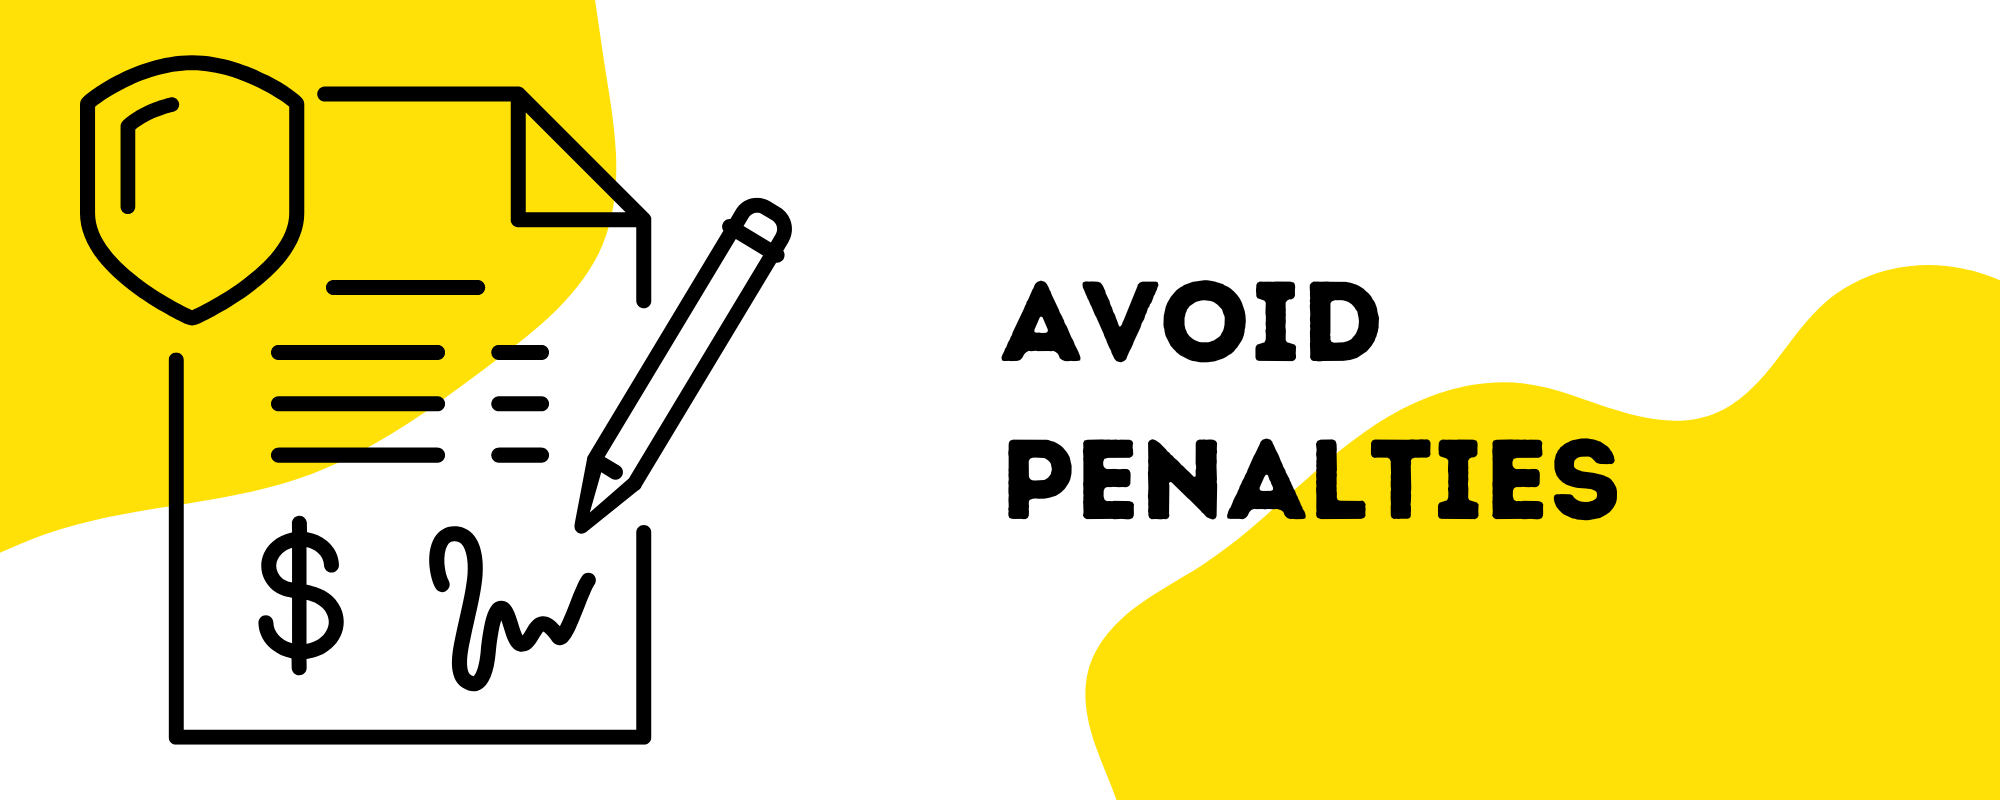 Avoid penalties